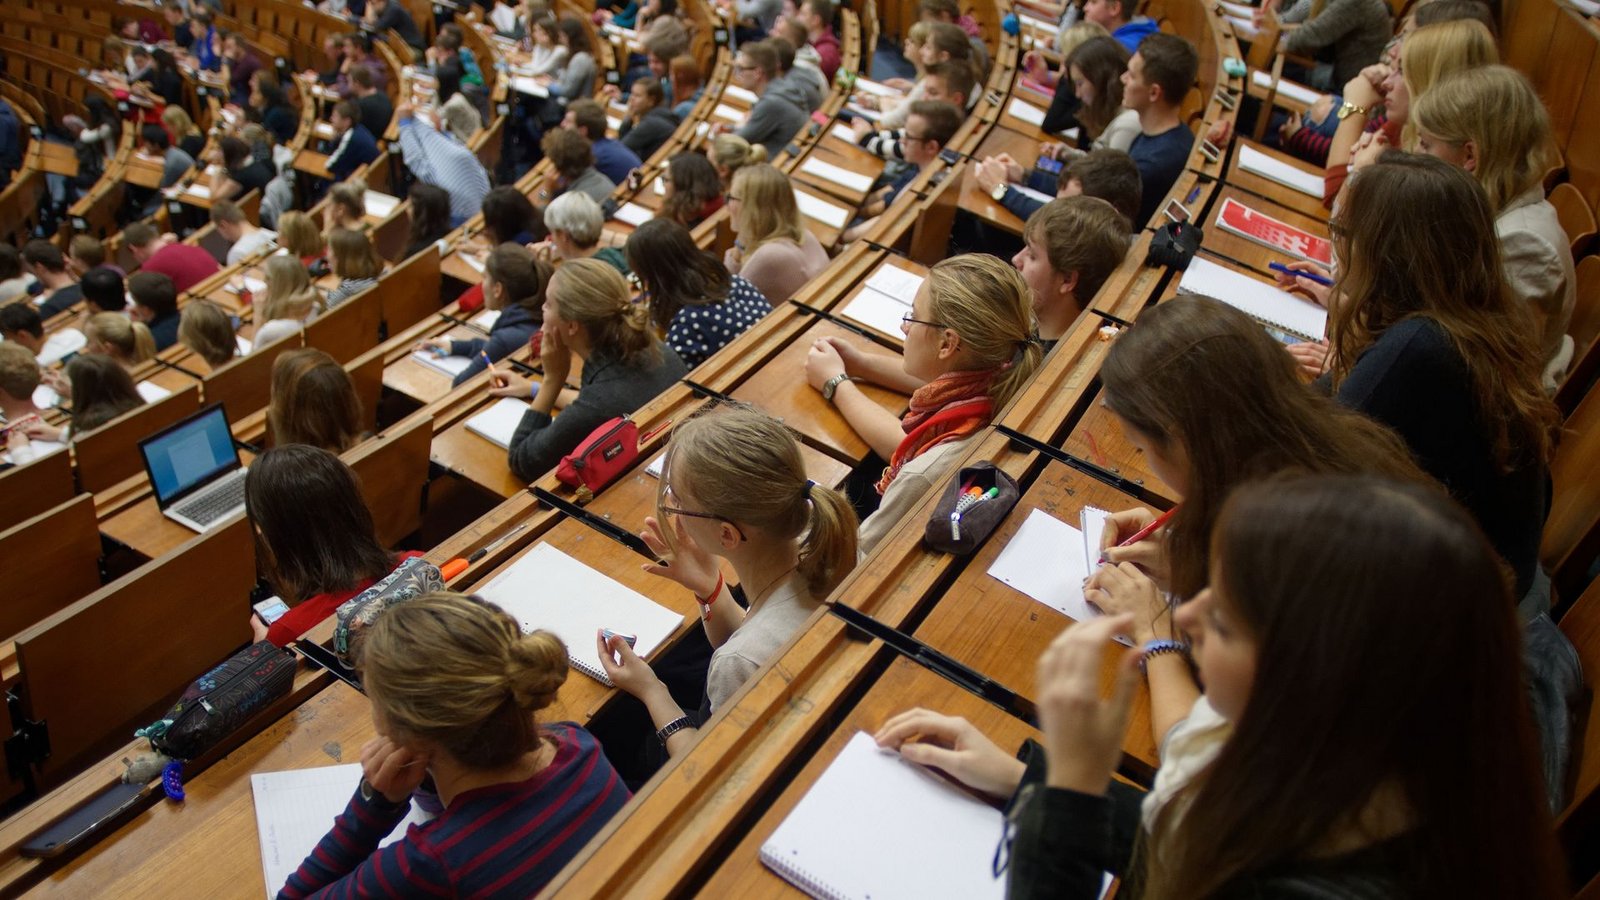 Studenten und Studentinnen während einer Vorlesung.Foto: Swen Pförtner/dpa